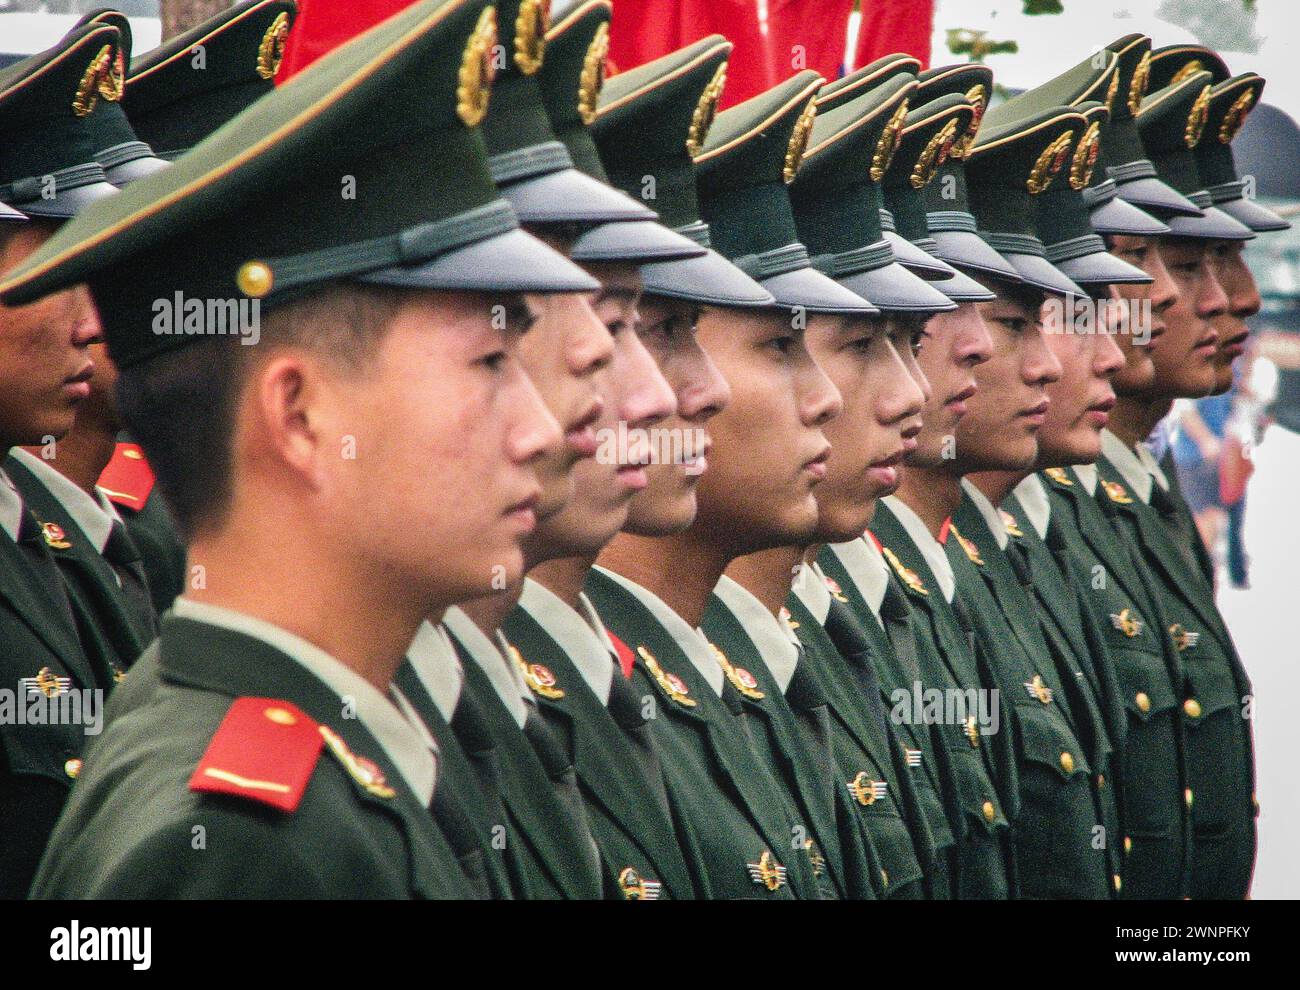 Chinesische Soldaten auf Parade bei den Olympischen Spielen 2008 Stockfoto